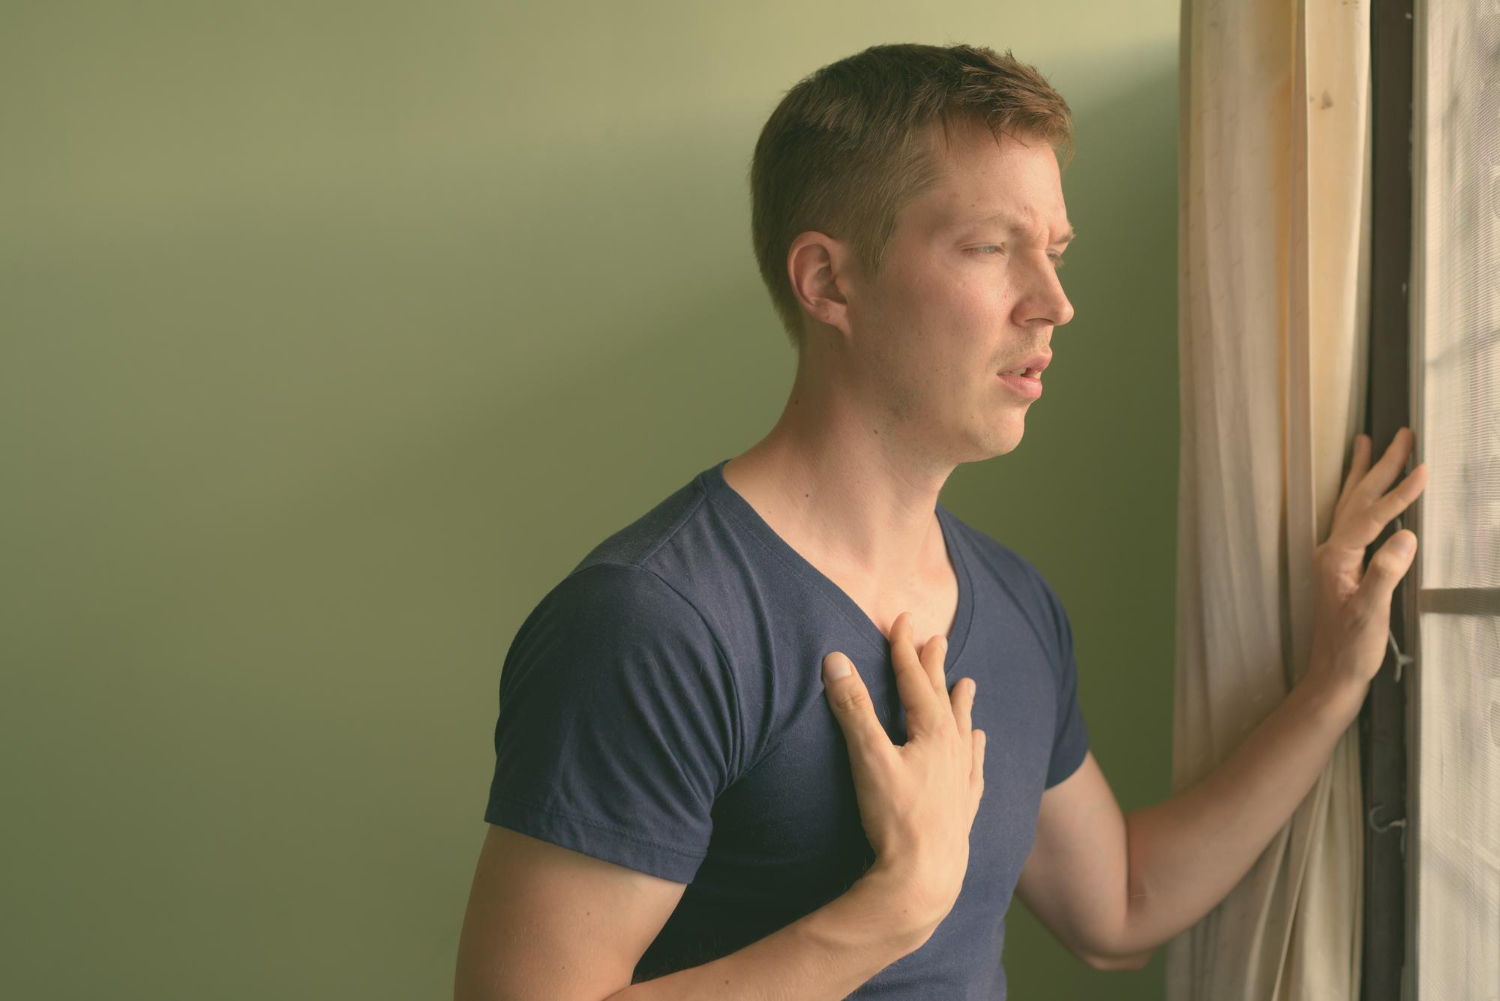 Een man met een blauw t-shirt aan, staat voor het raam en kijkt naar buiten. Hij heeft zijn ene hand tegen het raam aan en zijn andere hand heeft hij op zijn borst. De man oefent met zang- en ademhalingstechnieken.